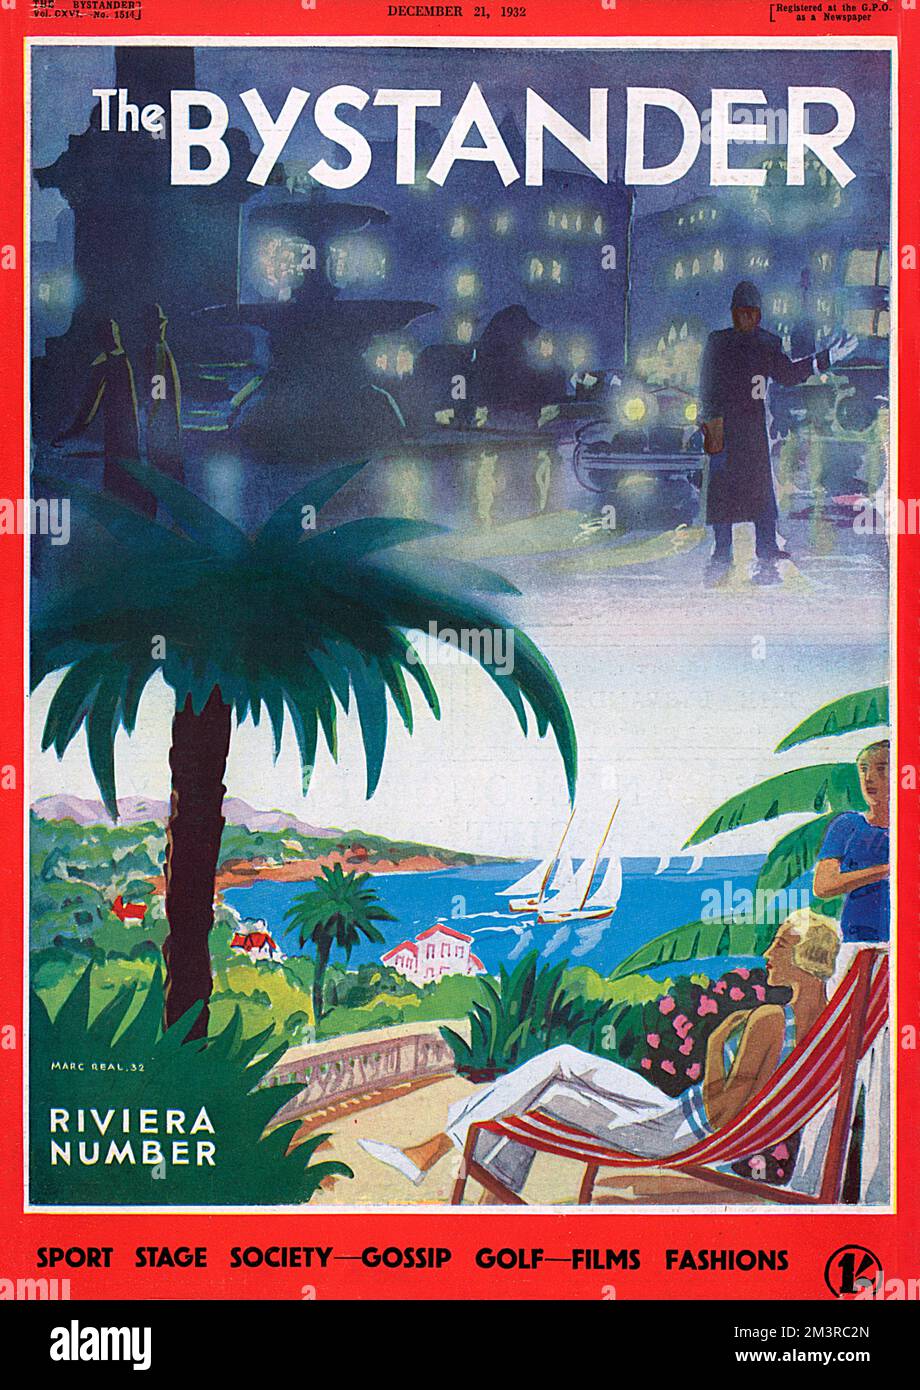 Titelseite der Riviera Number des Zuschauermagazins im Dezember 1932, die den feuchten, dunklen Smog Londons mit dem blauen Himmel, Sonnenschein und üppiger Vegetation der französischen Riviera kontrastiert. Ich weiß, wo ich lieber wäre. 1932 Stockfoto